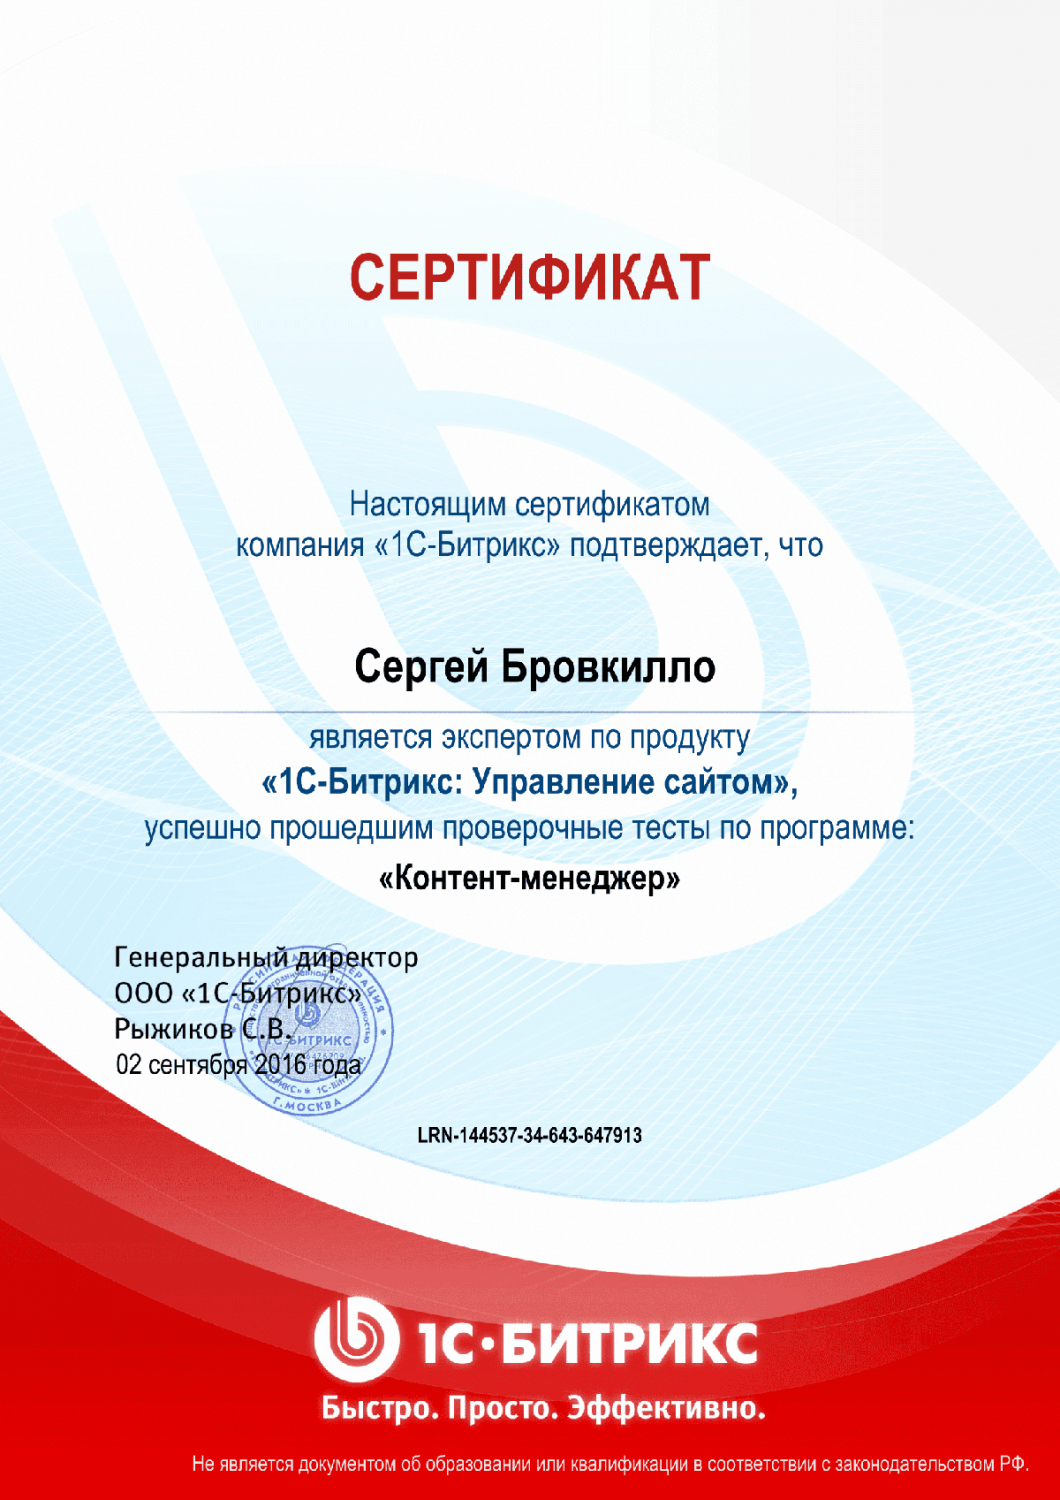 Сертификат эксперта по программе "Контент-менеджер"" в Самары